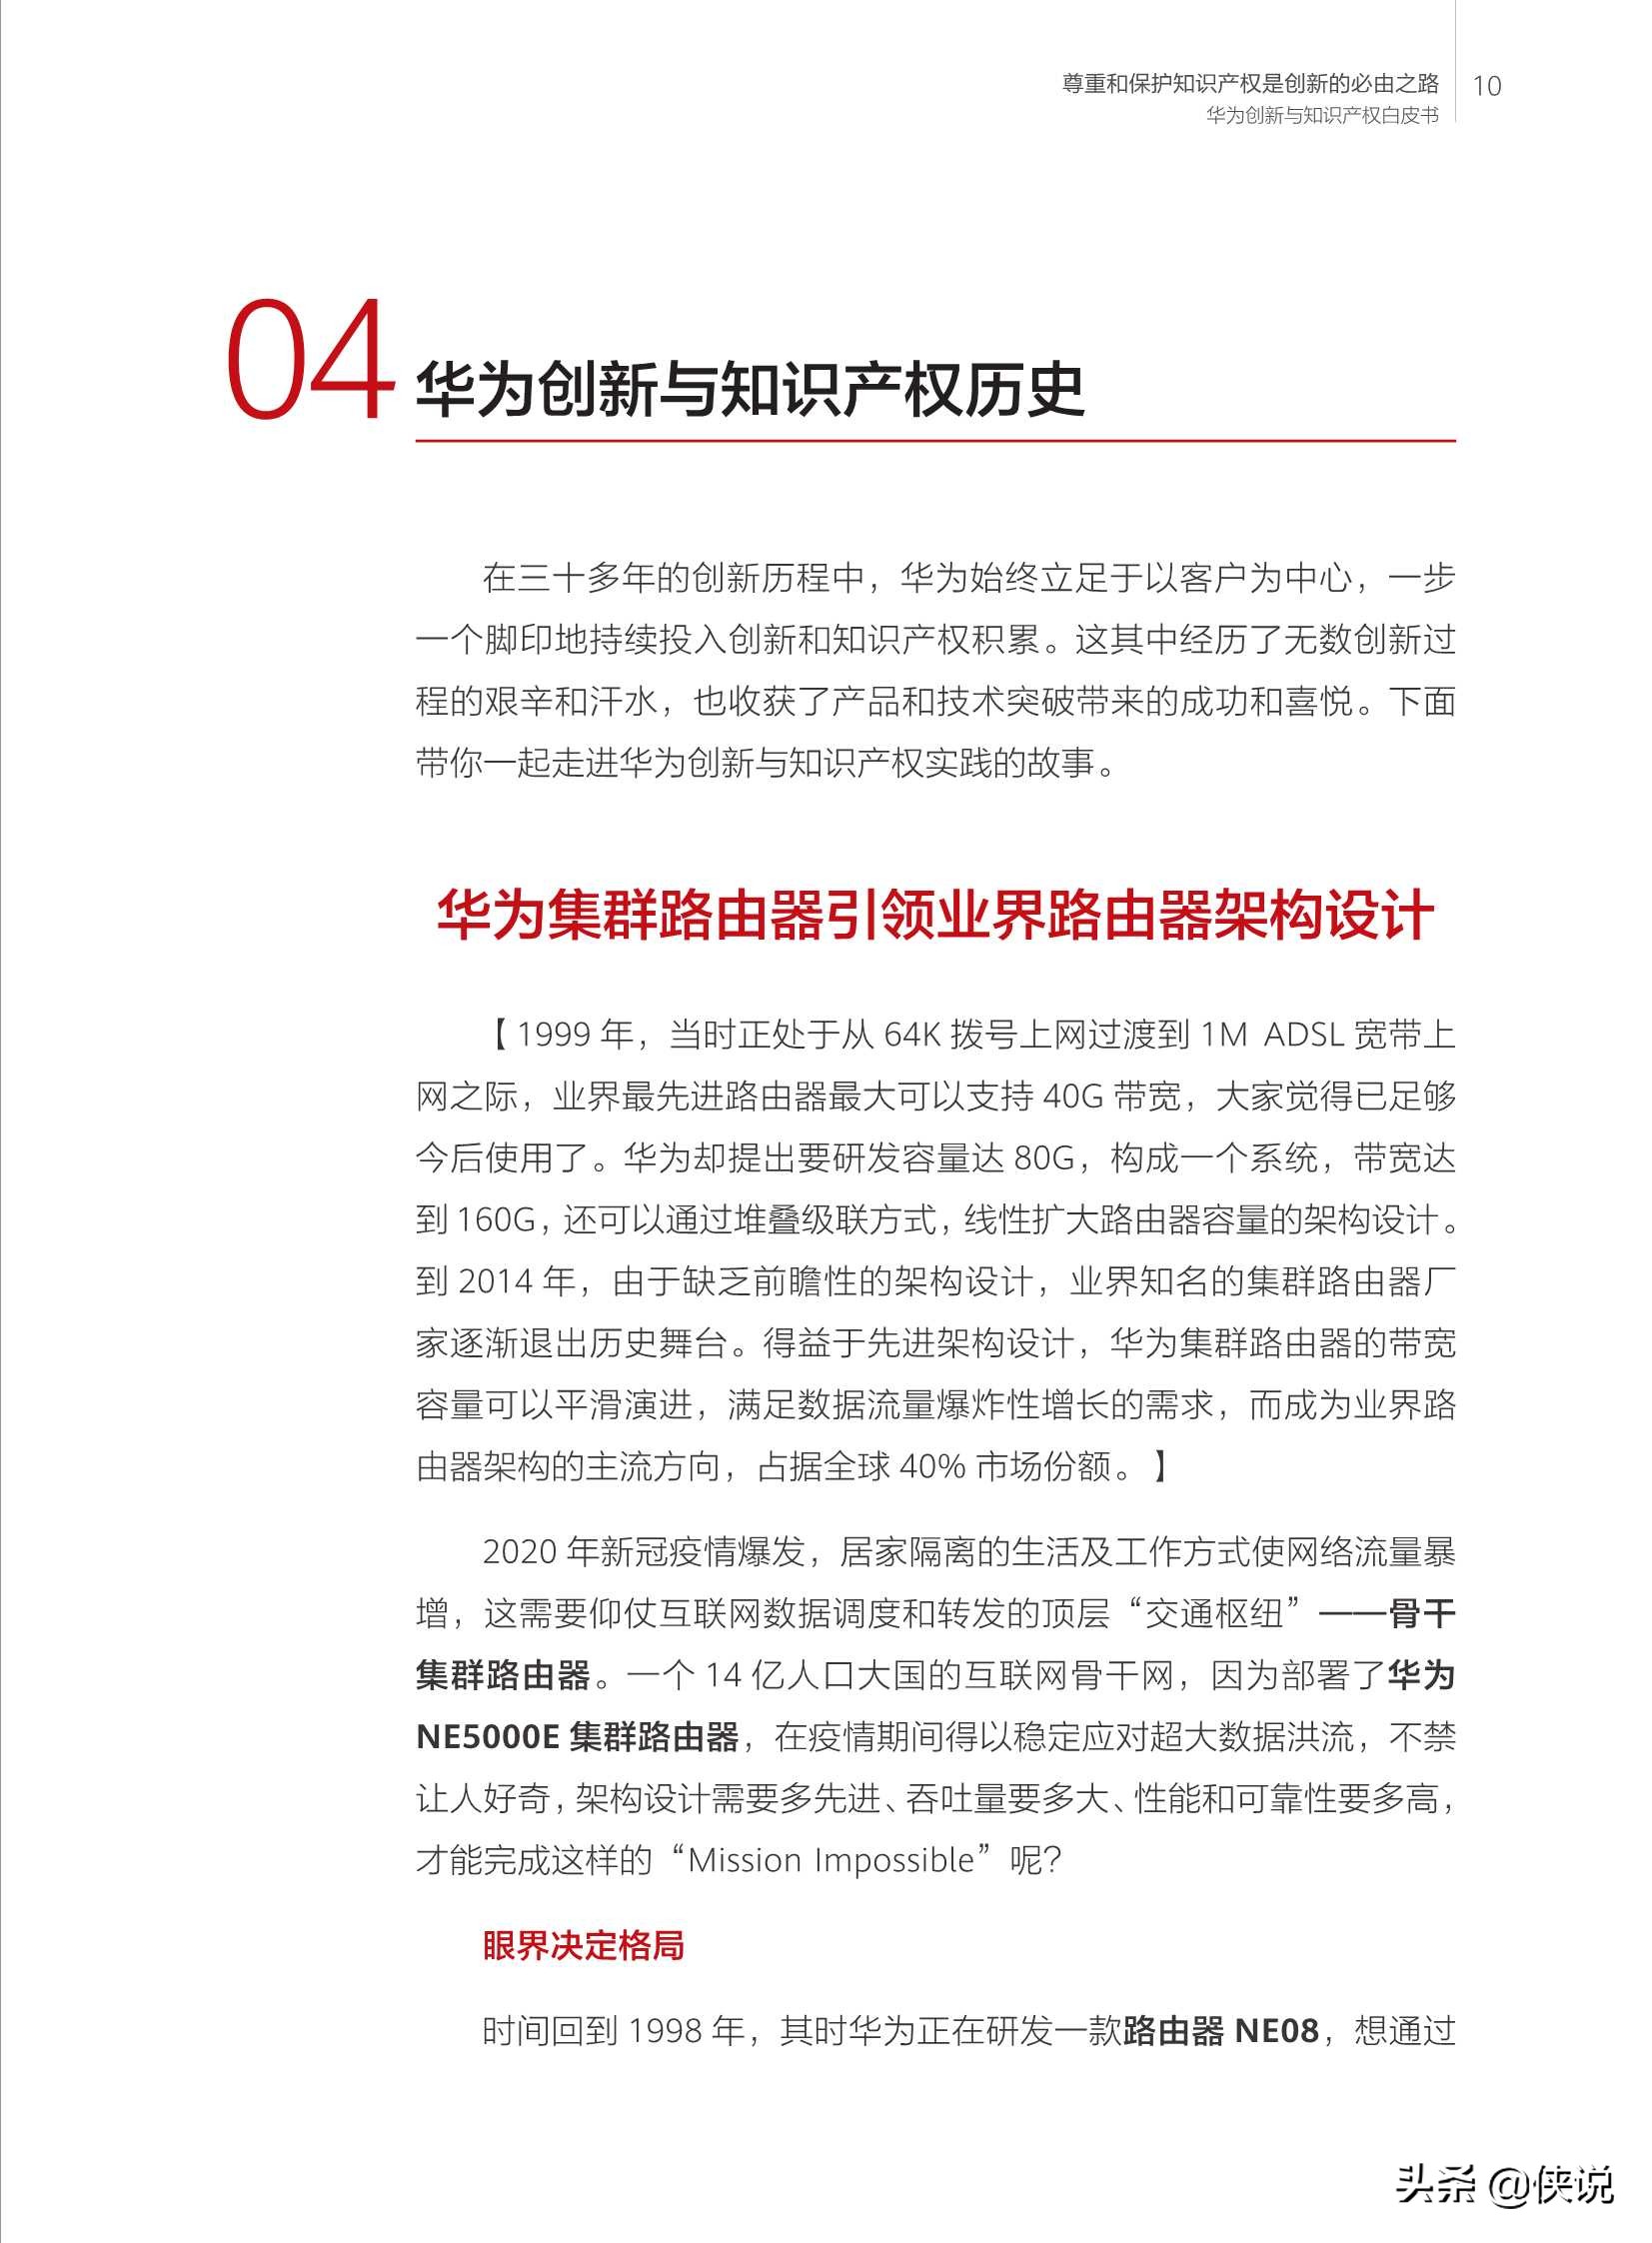 华为创新和知识产权白皮书2020